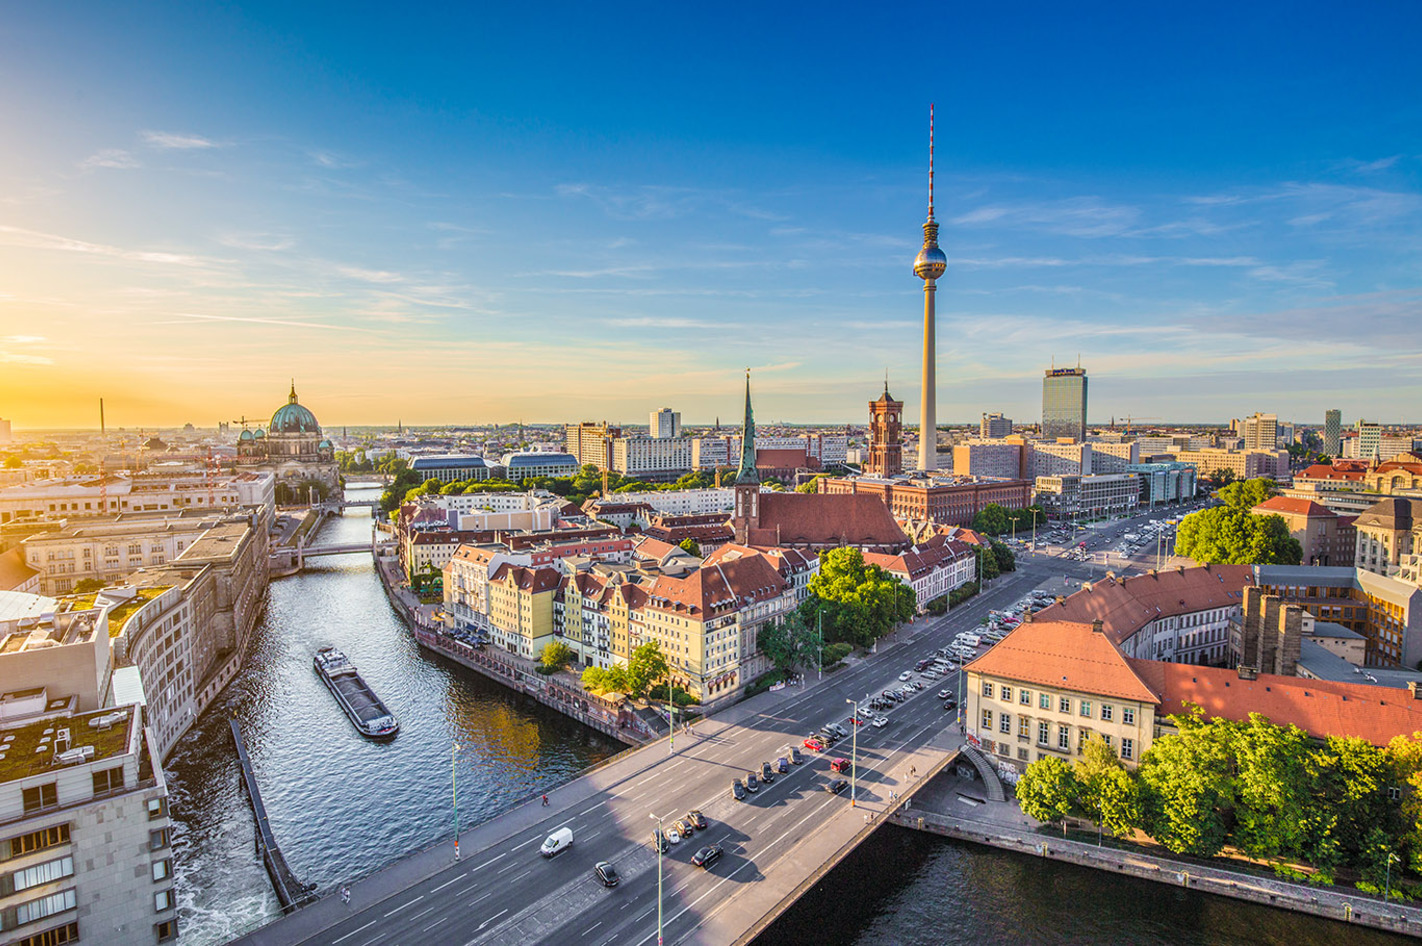 Städtereise Berlin für 2 (2 Nächte) – Berlin – die Nr. 1 auf eurer City-Bucket-List